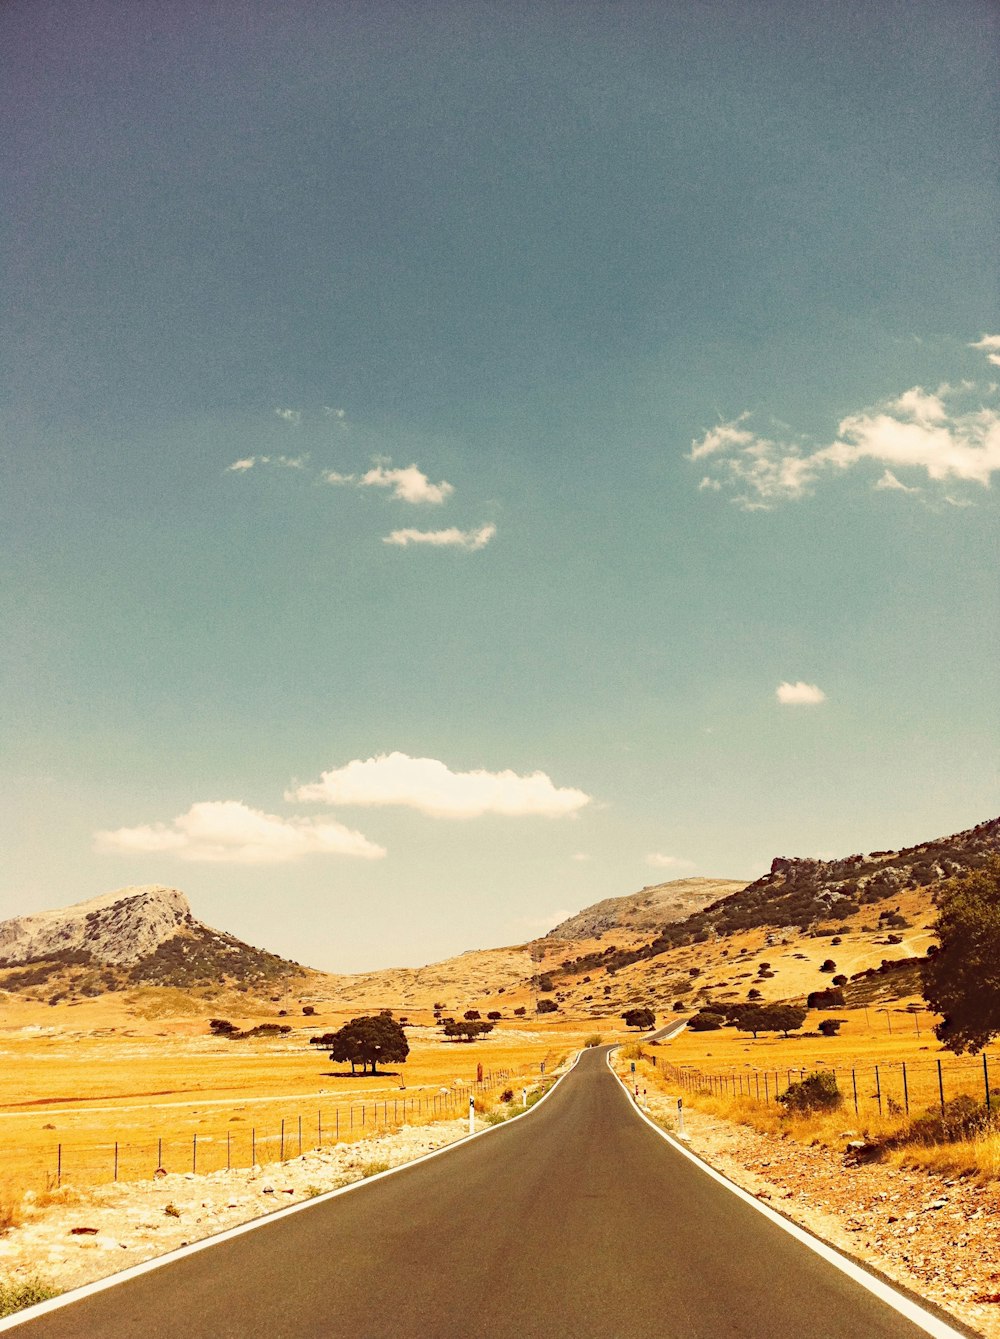 Una strada vuota in mezzo al deserto